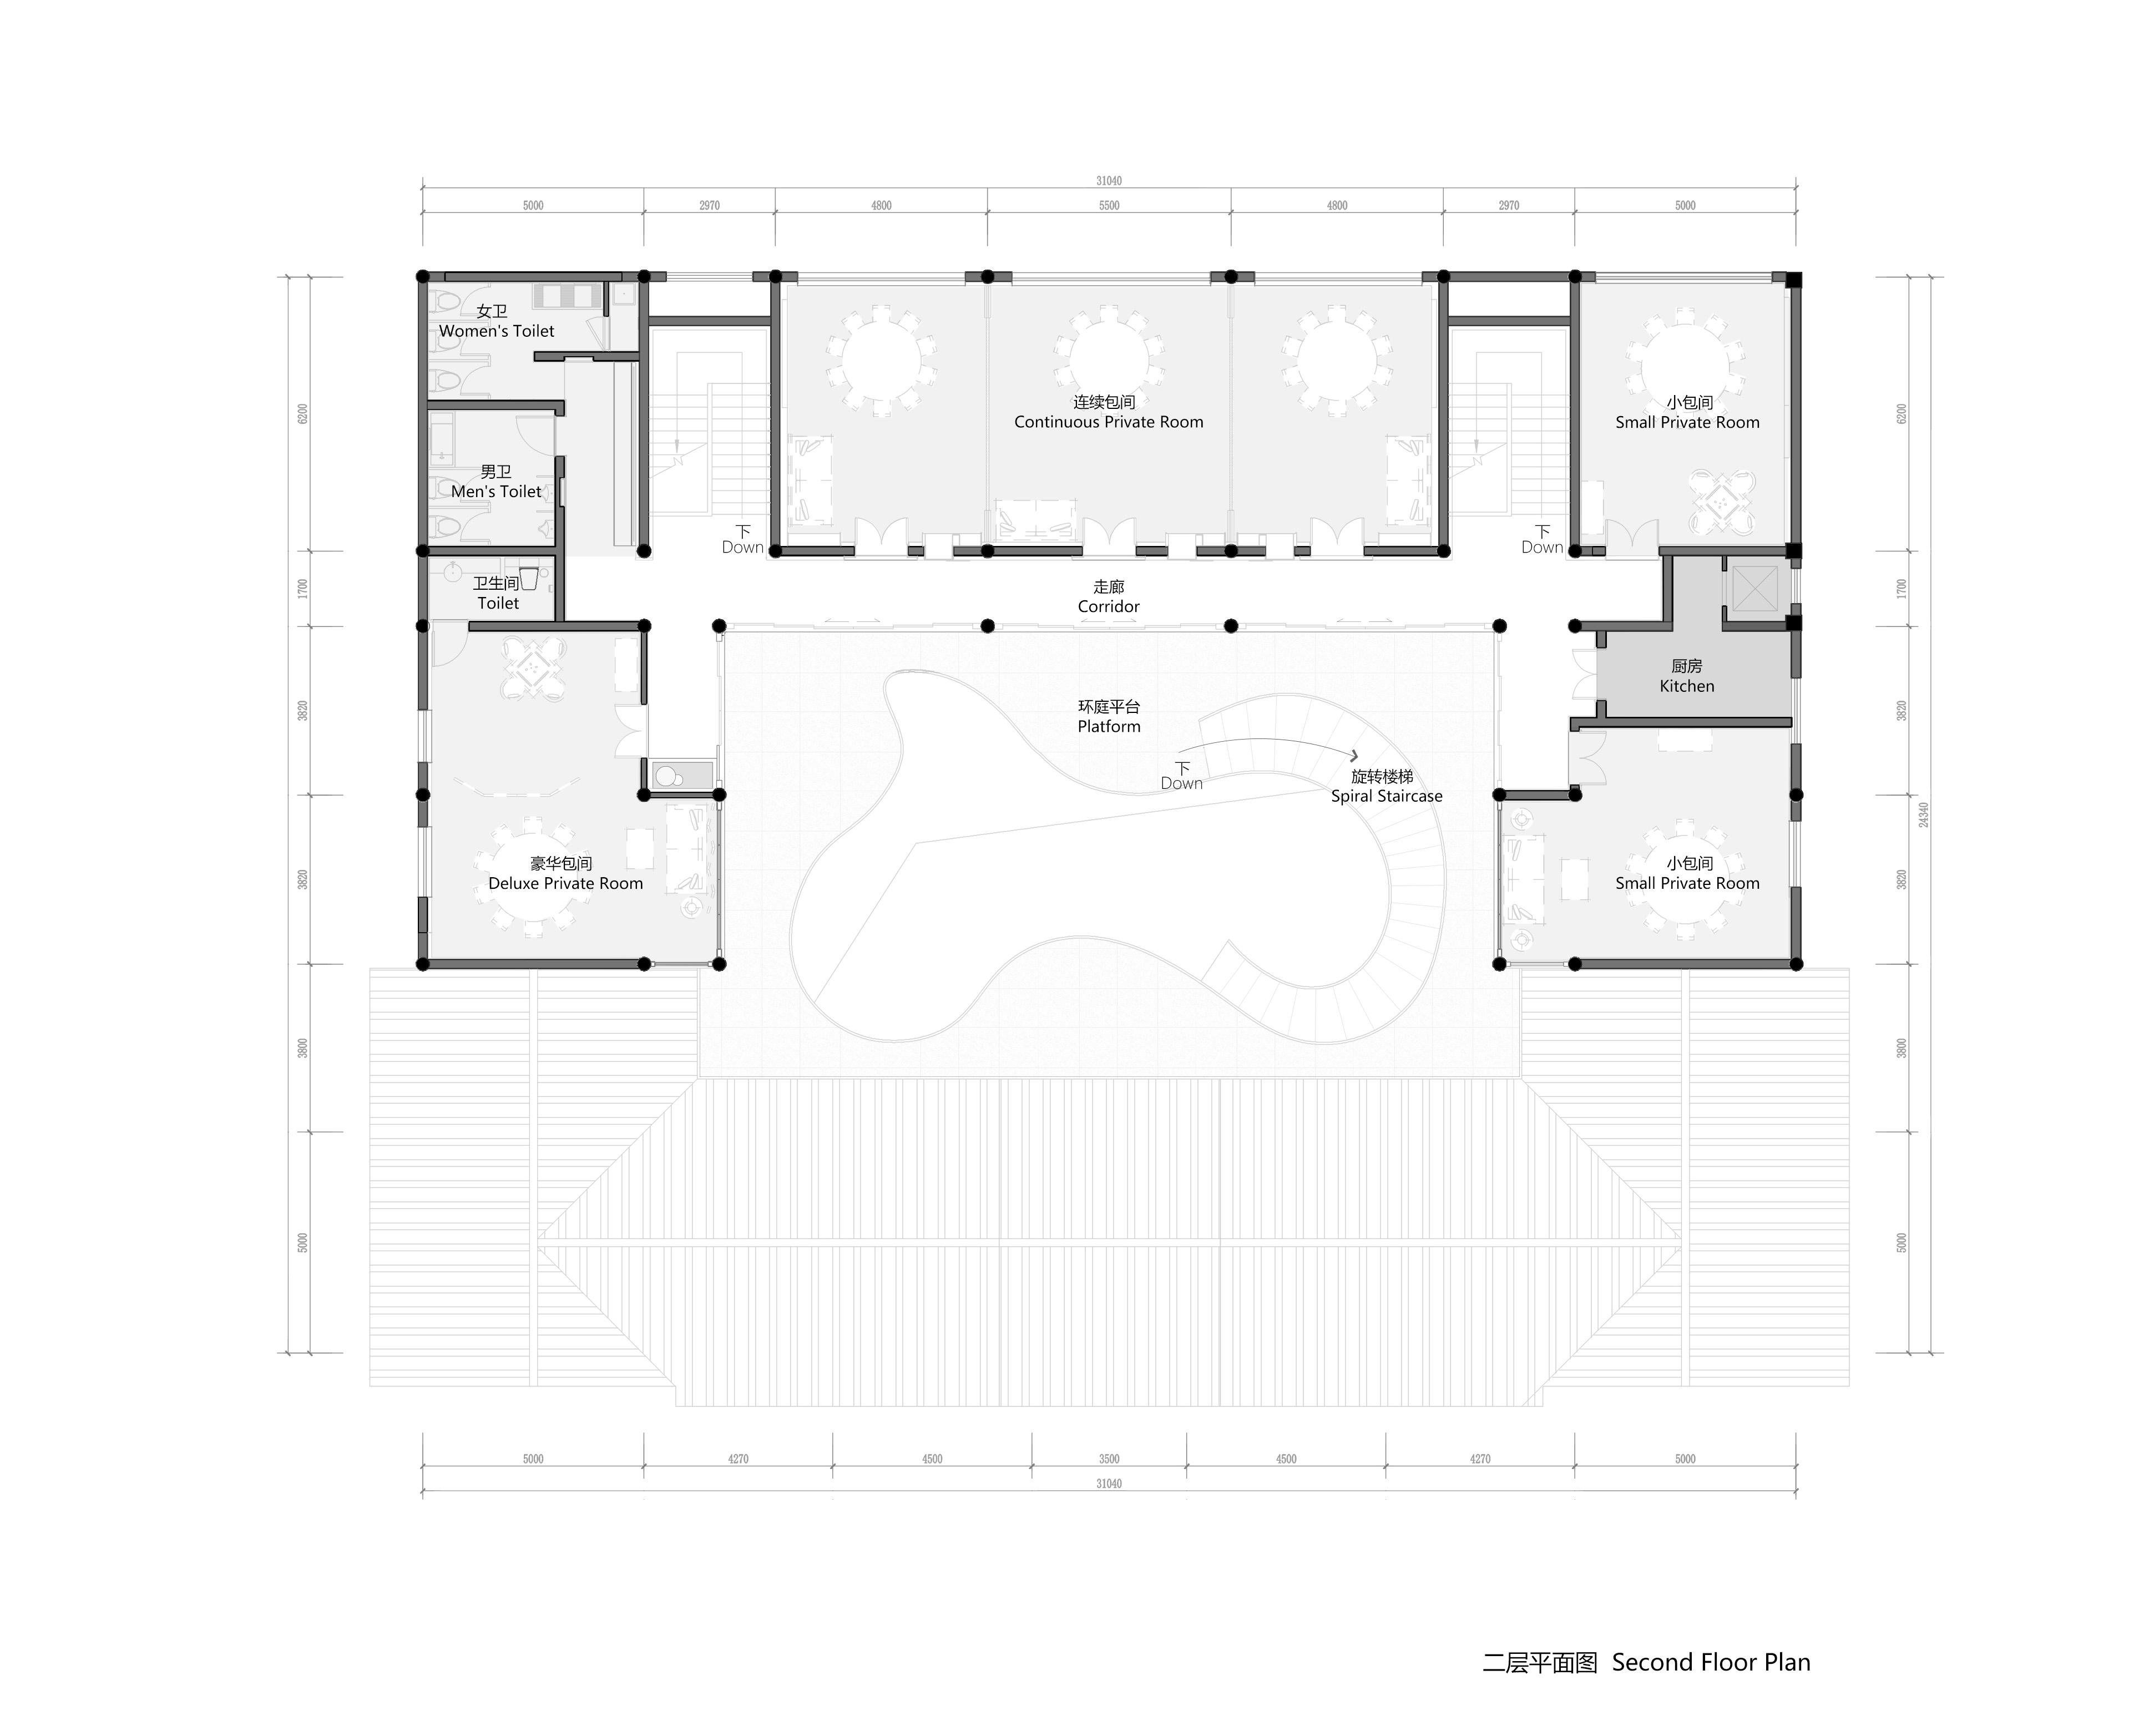 Second-floor plan